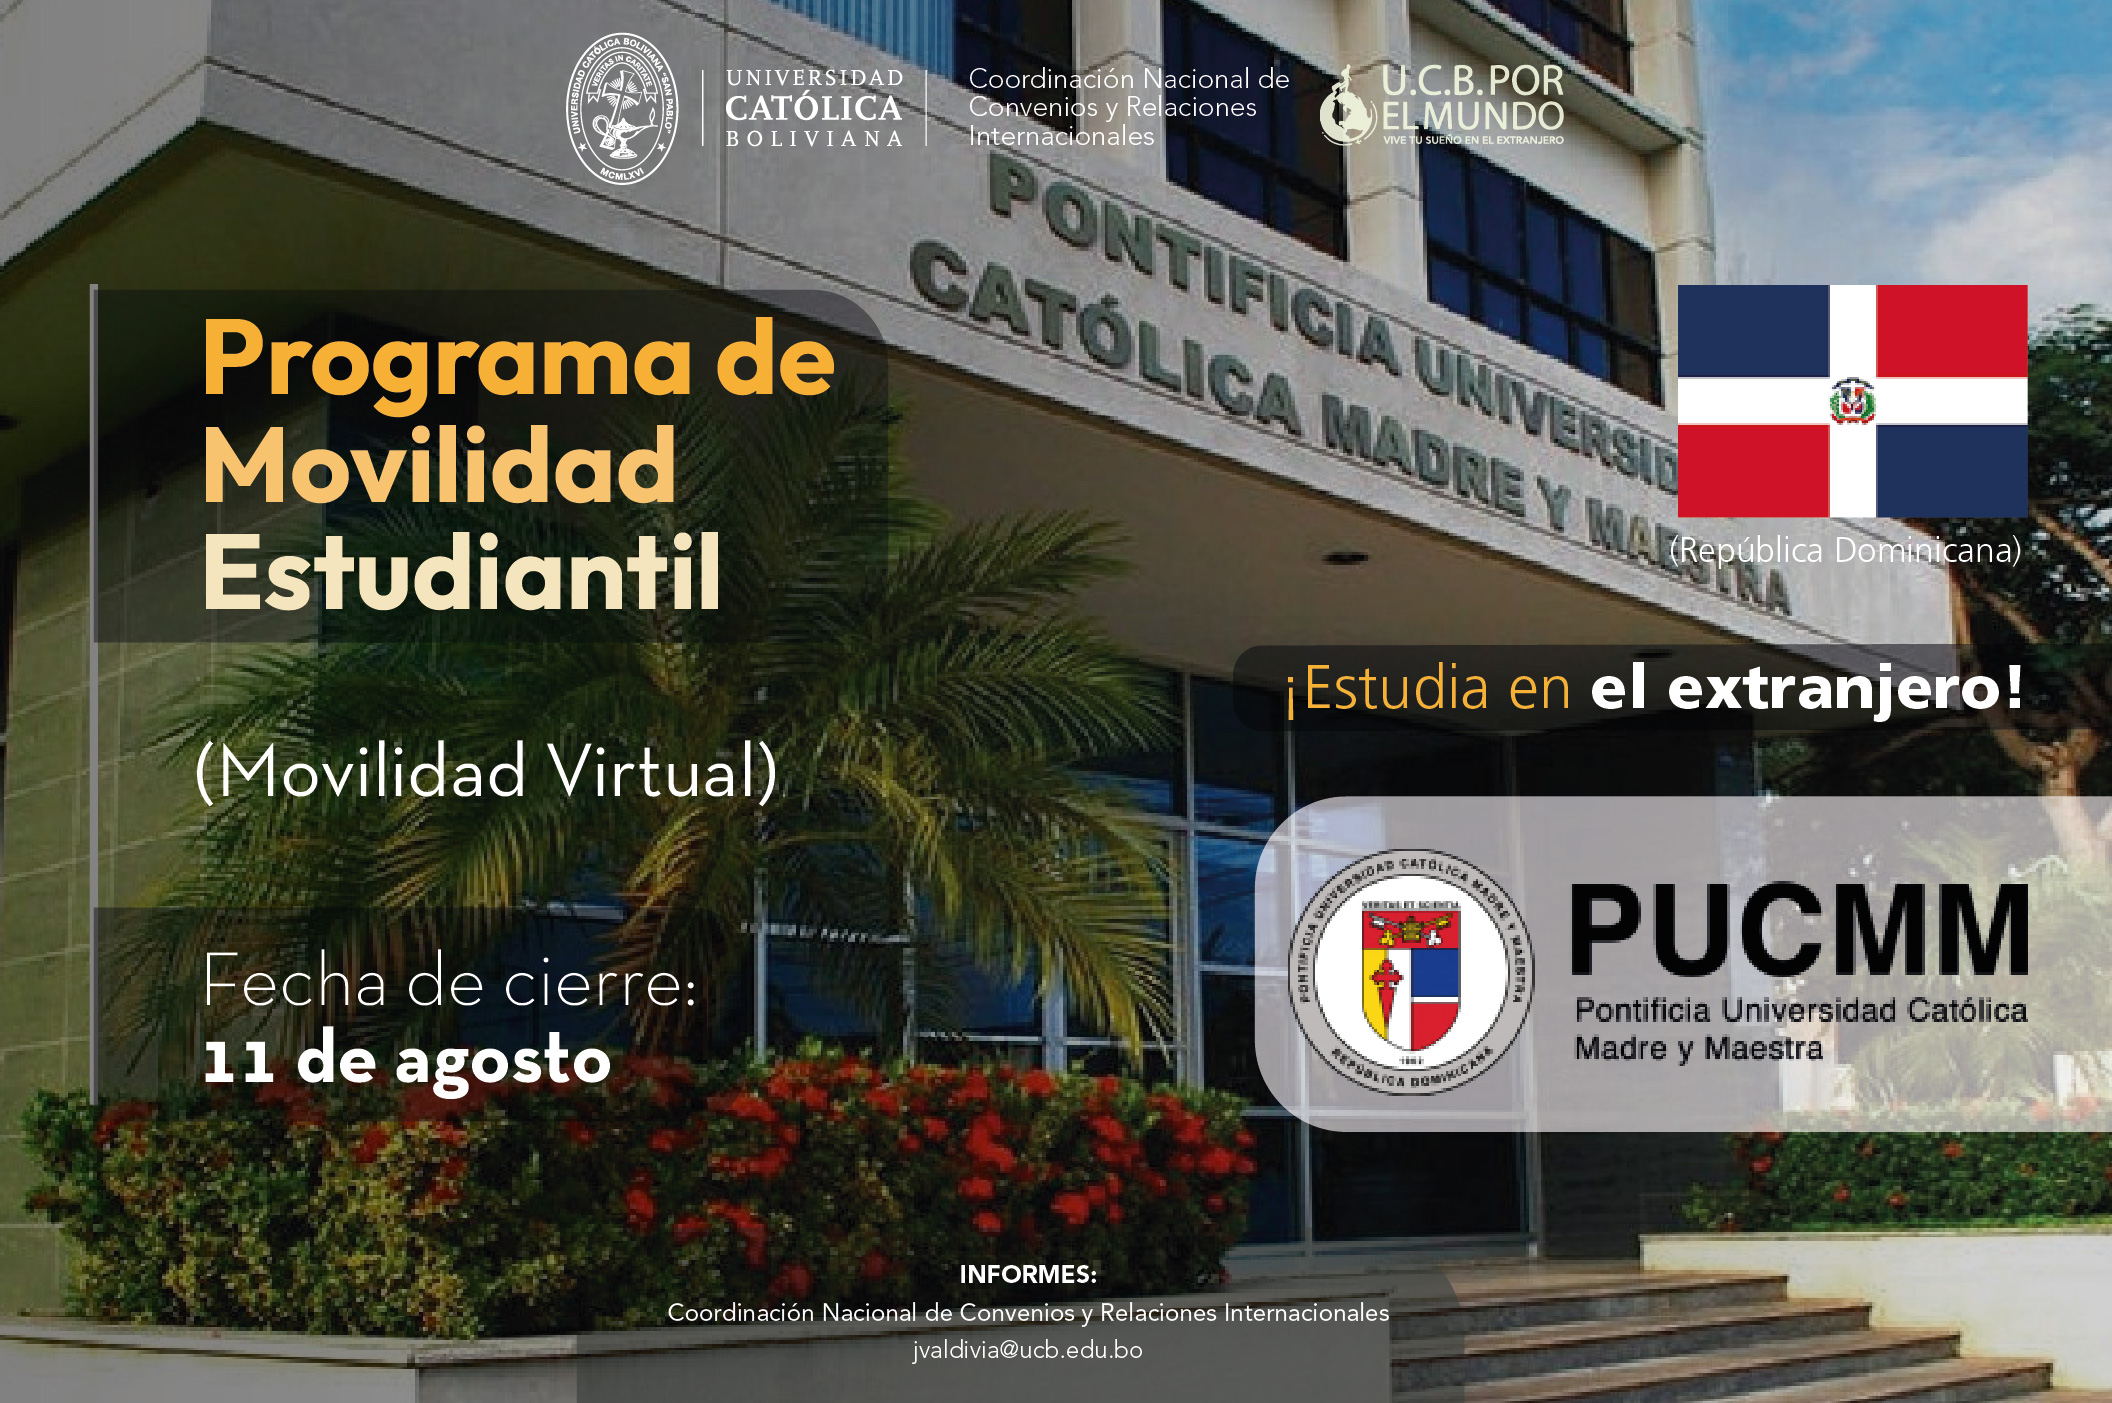 El Programa de Movilidad Estudiantil UCB por el Mundo cuenta con cupos en la Pontificia Universidad Católica Madre y Maestra de República Dominicana.